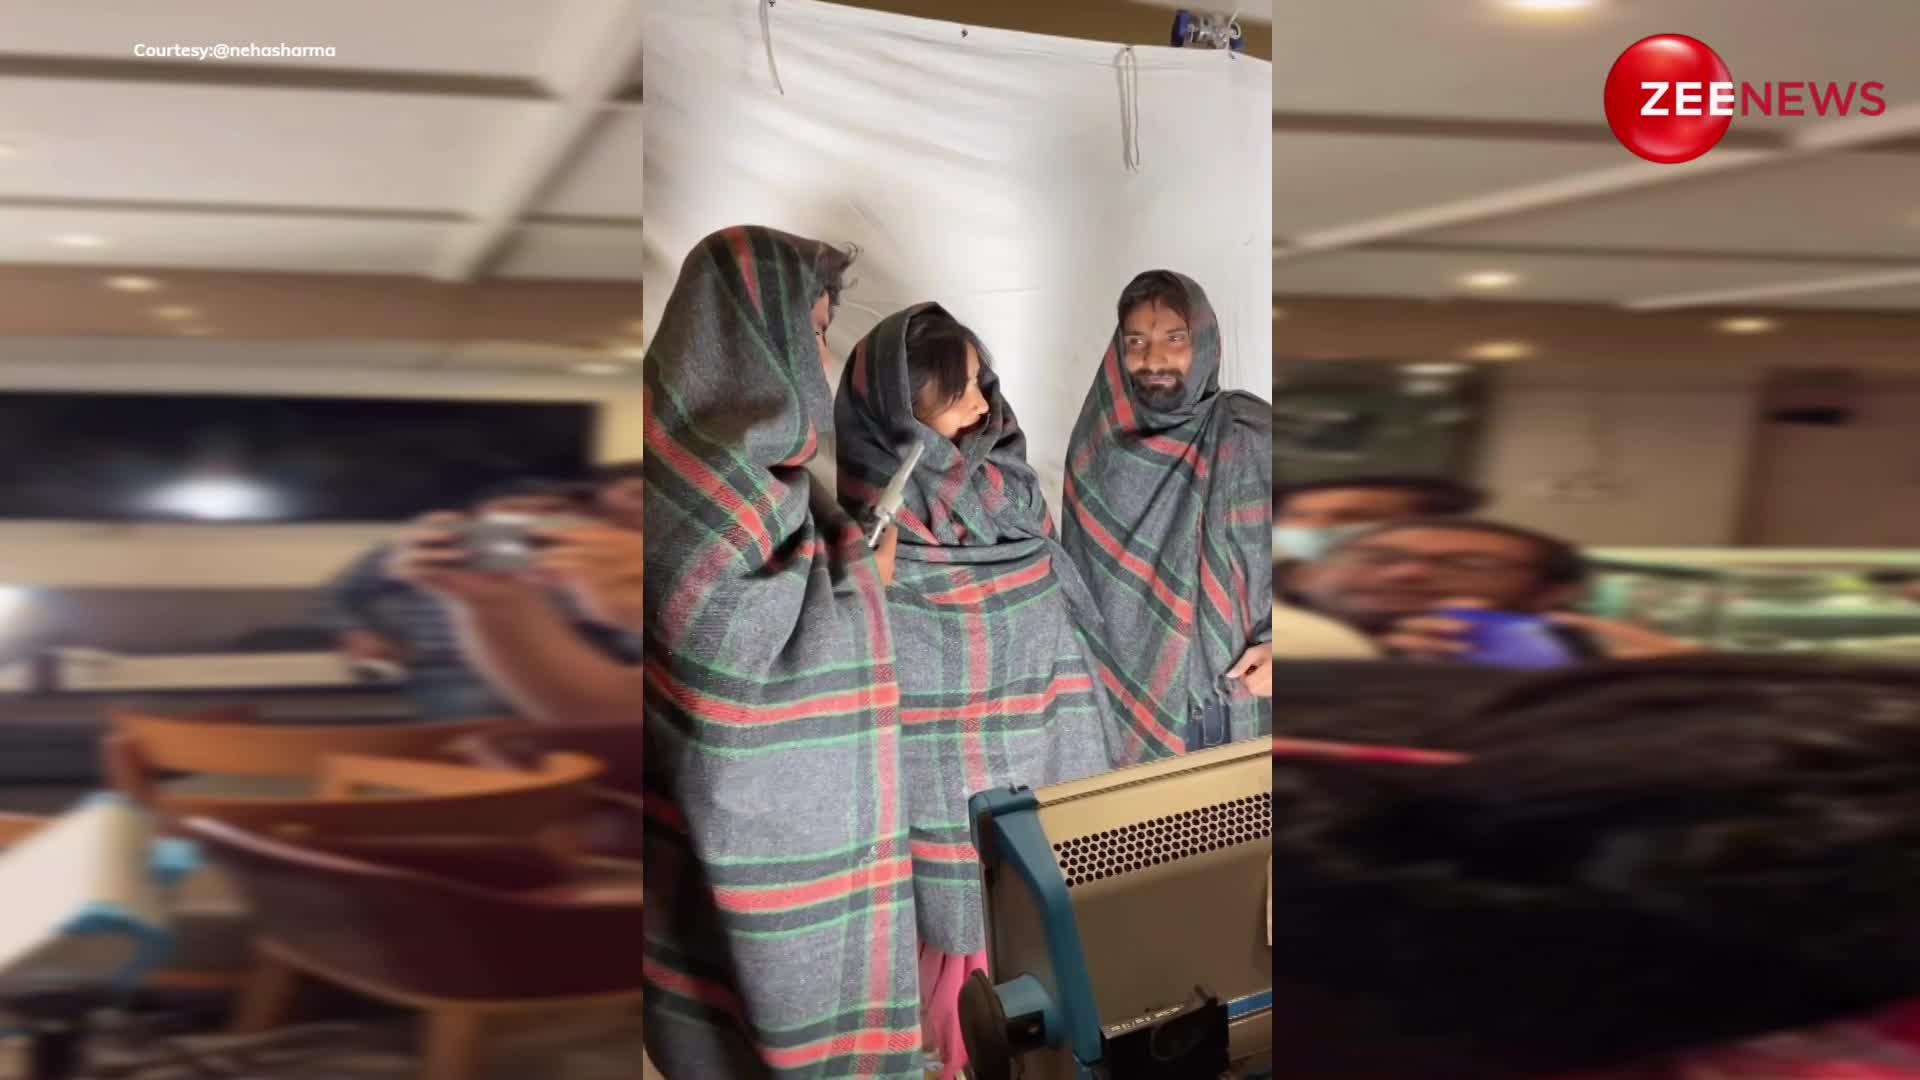 चौकीदार का कंबल लपेट लड़कों के साथ सबके सामने Neha Sharma ने की ऐसी हरकत, देख दादा जी बोले- नेता की बेटी हो तो कुछ भी करोगी